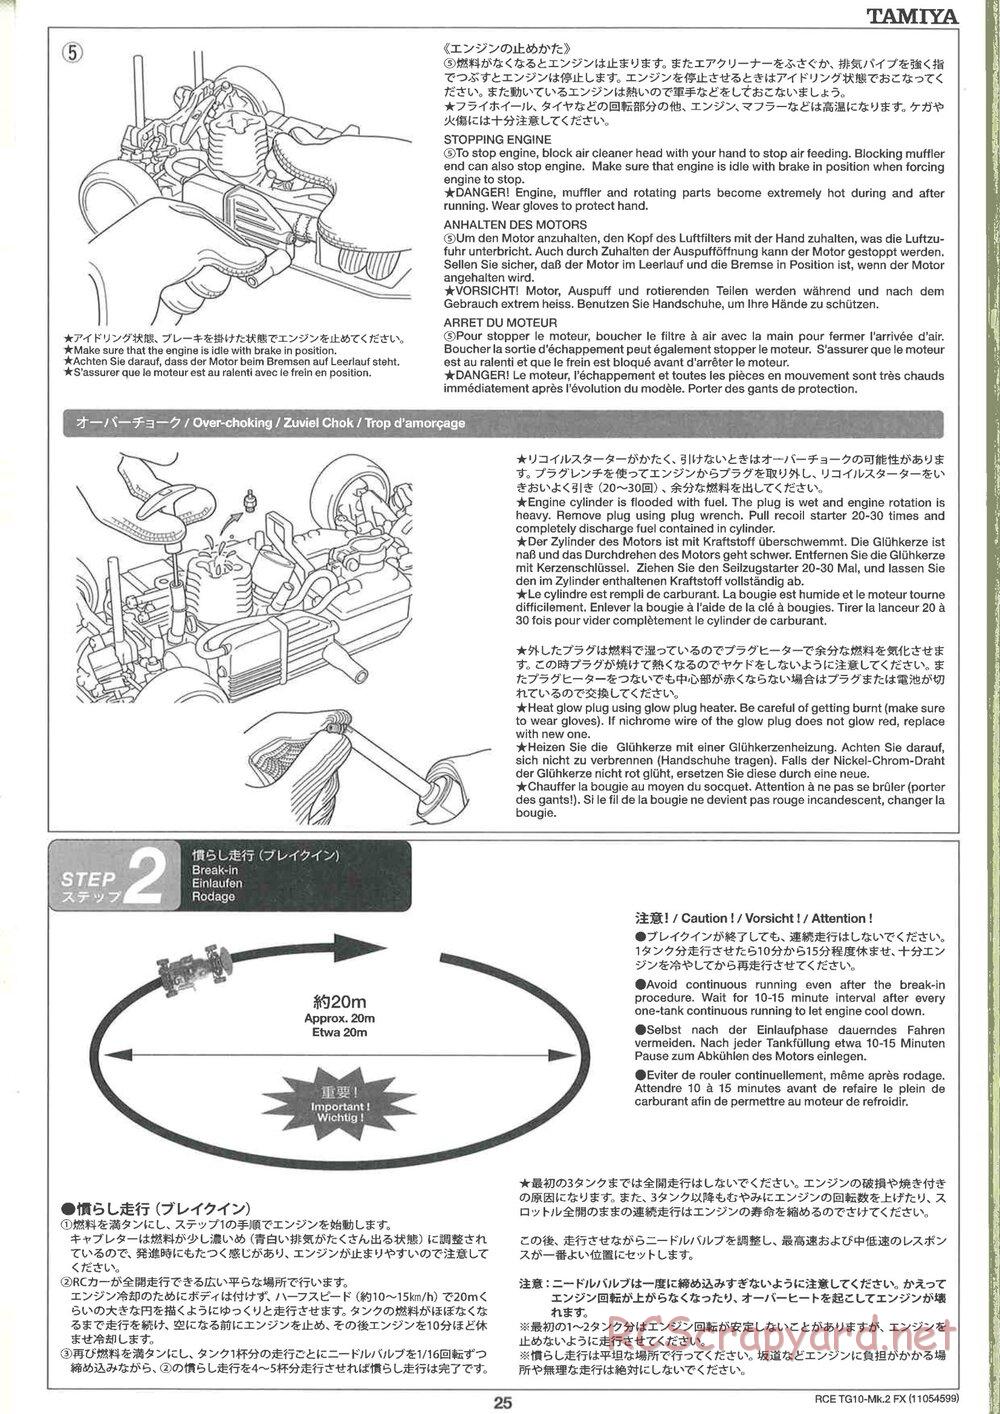 Tamiya - TG10 Mk.2 FX Chassis - Manual - Page 25